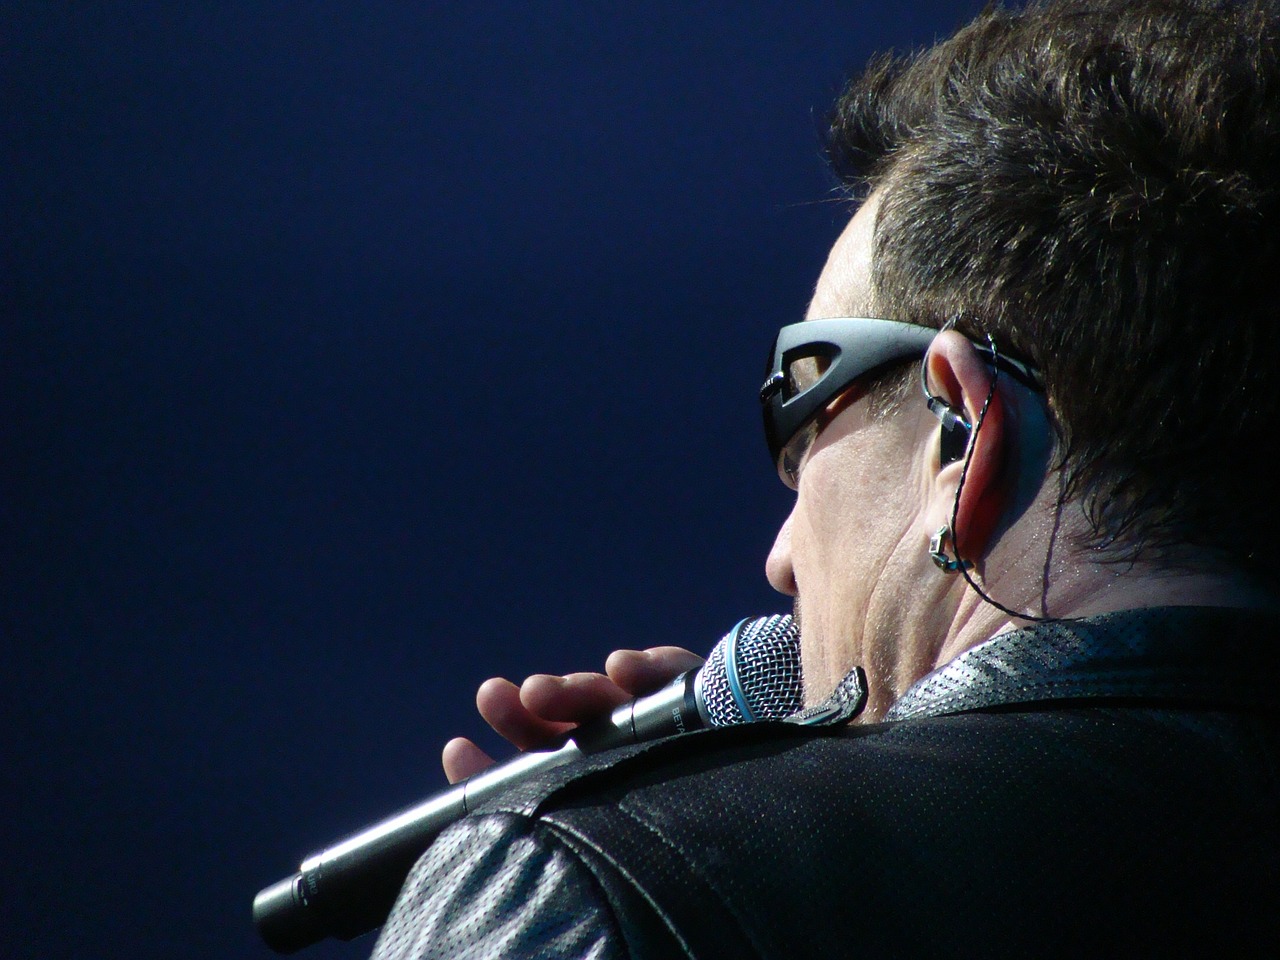 Paul David Hewson, Dainininkė, Bono, U2, Vyras, Asmuo, Priešininkas, Dainininkas-Dainų Autorius, Muzikantas, Investuotojas